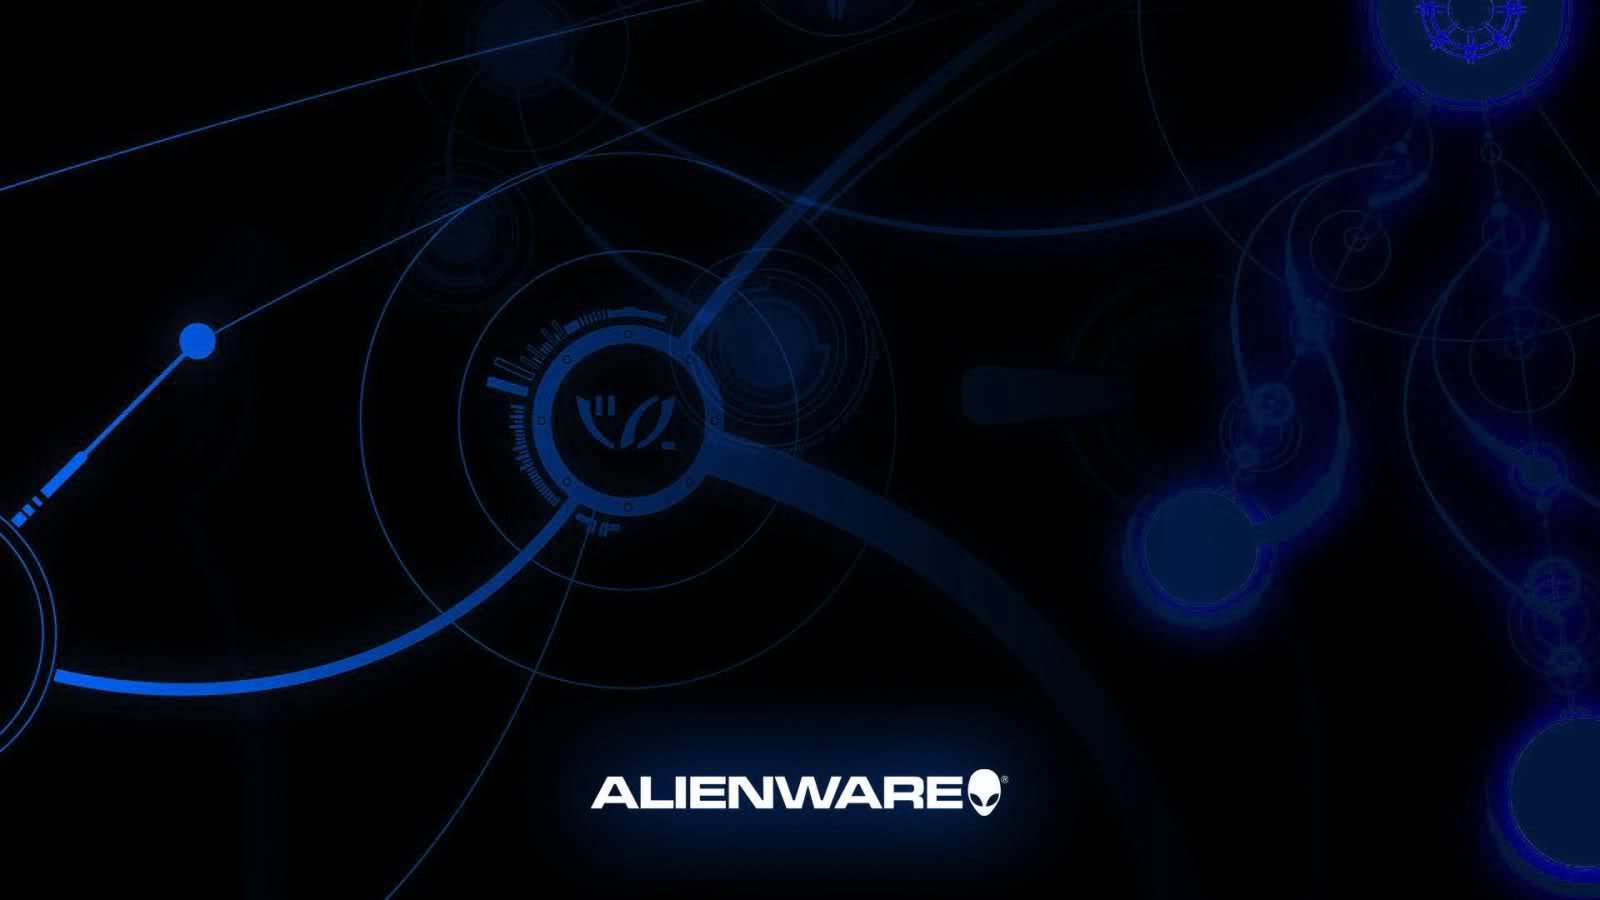 [46+] Alienware Live Wallpapers on WallpaperSafari